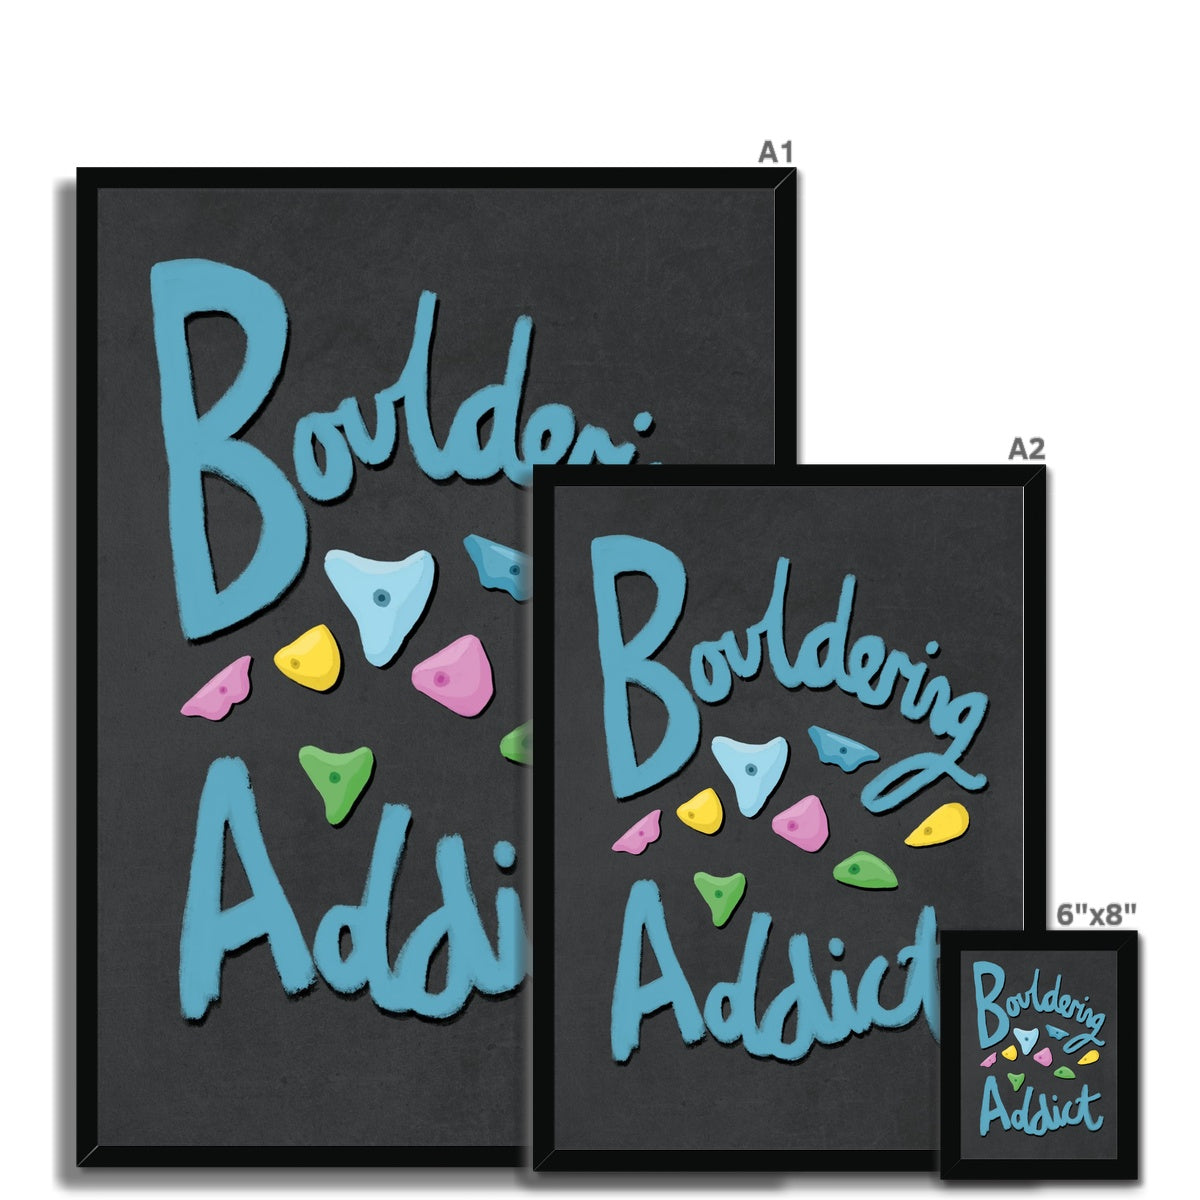 Bouldering Addict - Black and Blue Framed Print